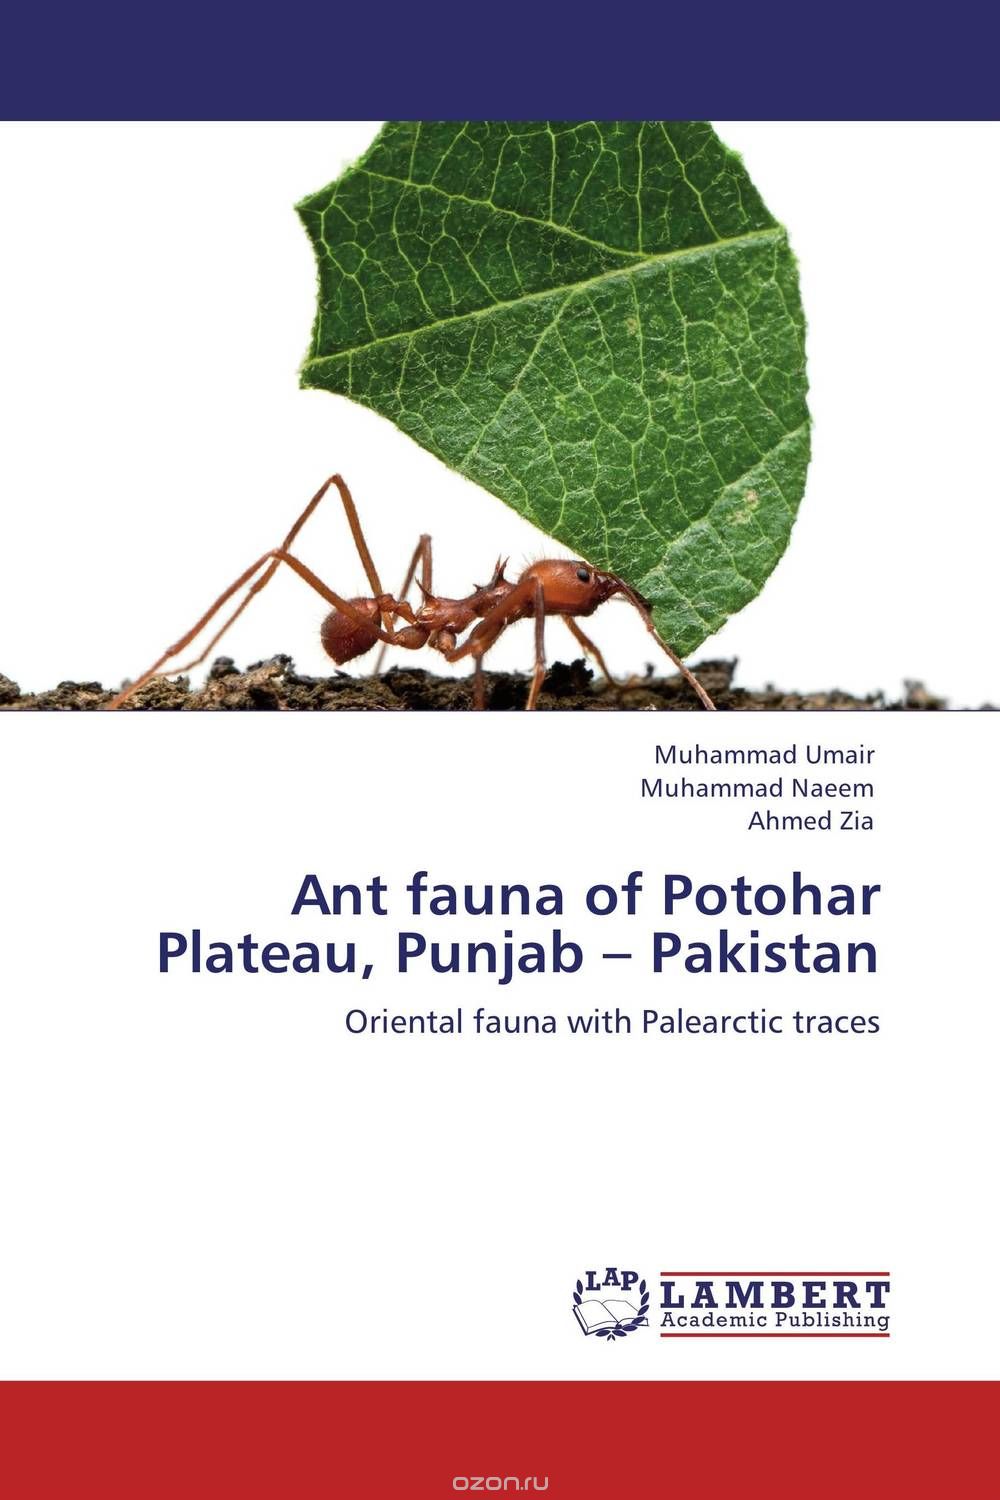 Скачать книгу "Ant fauna of Potohar Plateau, Punjab – Pakistan"